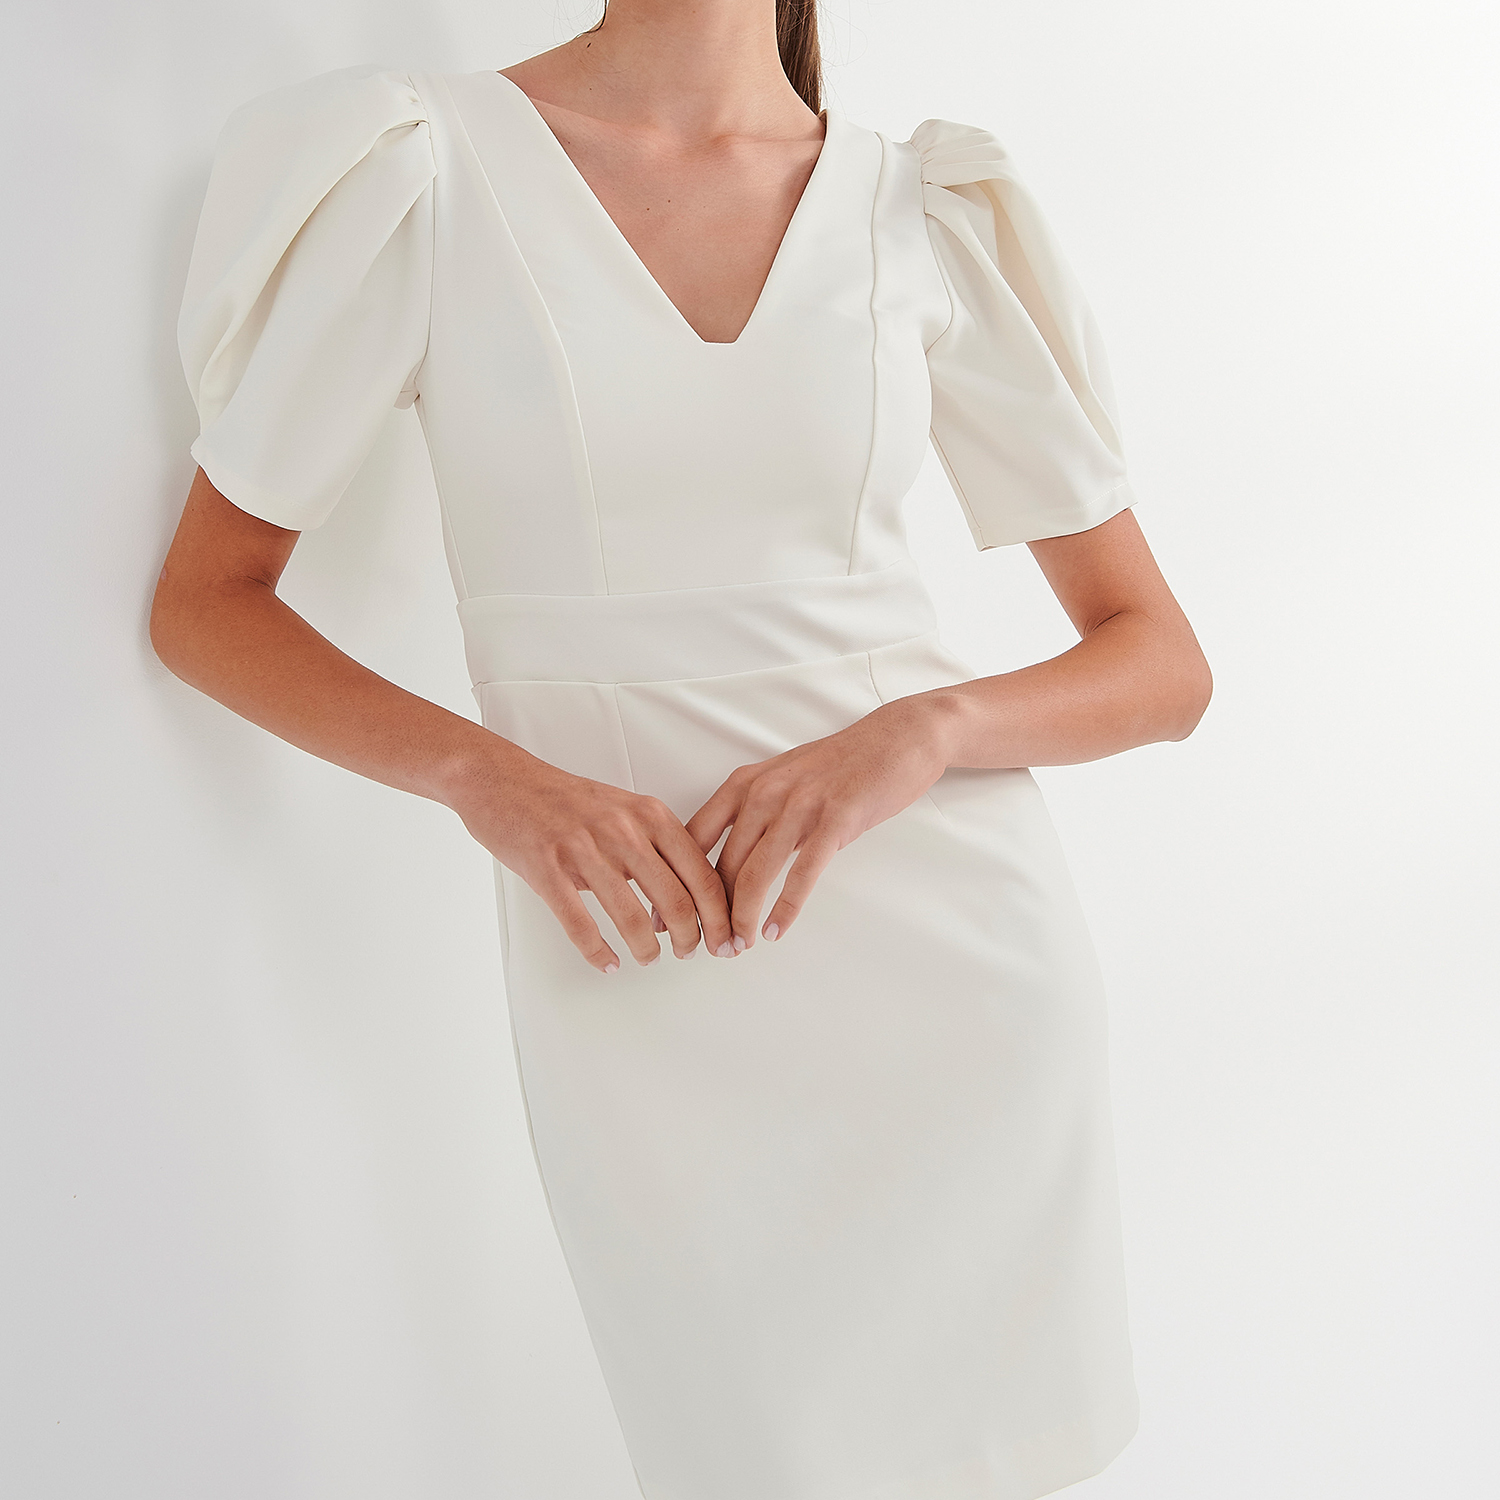 Γυναικεία/Ρούχα/Φορέματα/Μίνι ATTRATTIVO - Γυναικείο mini φόρεμα ATTRATTIVO λευκό